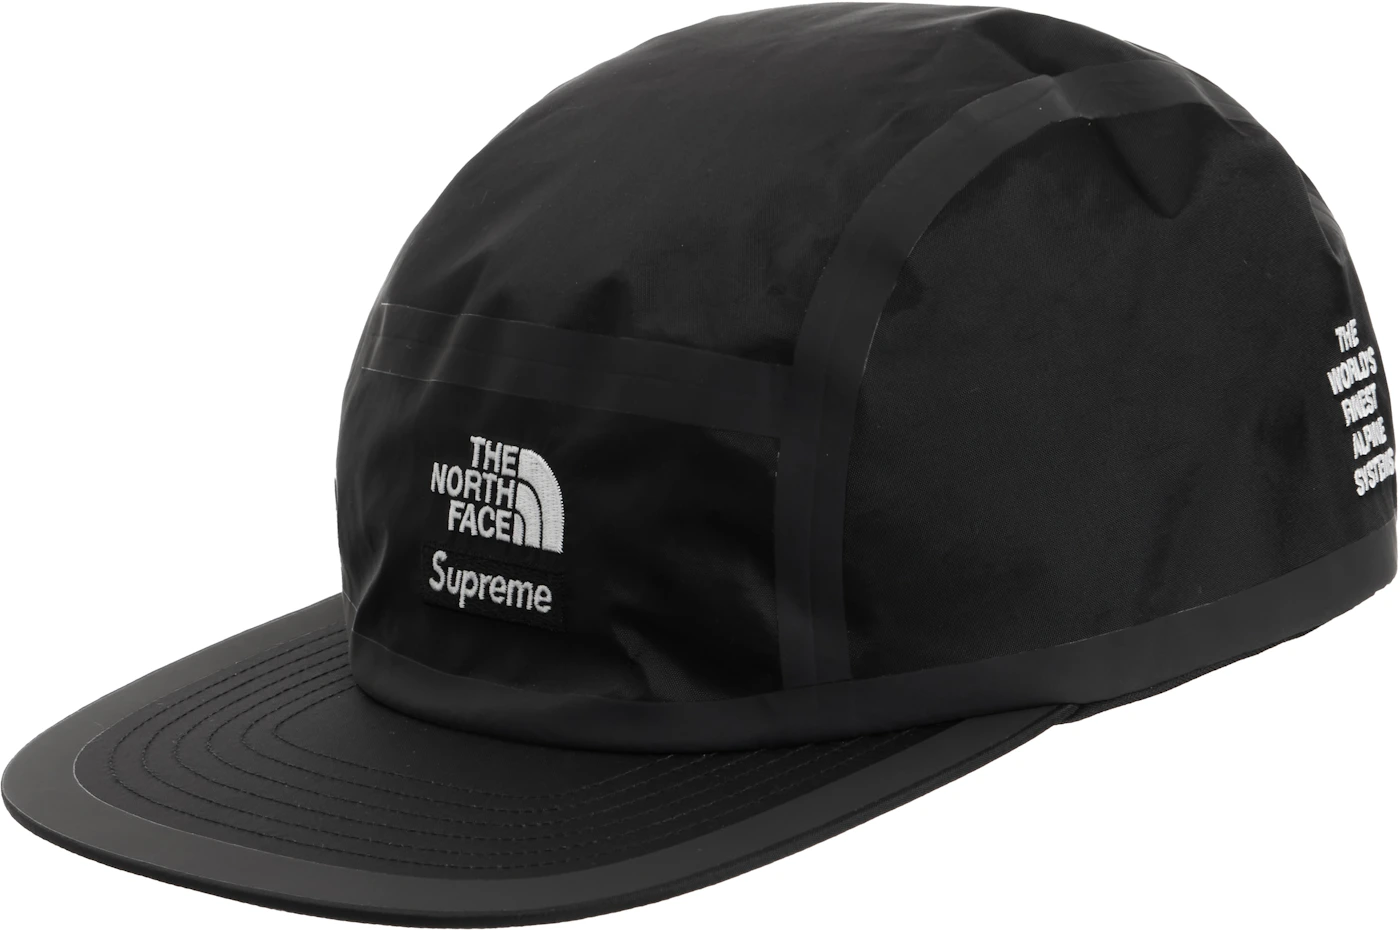 Supreme/The North Face® – Supreme